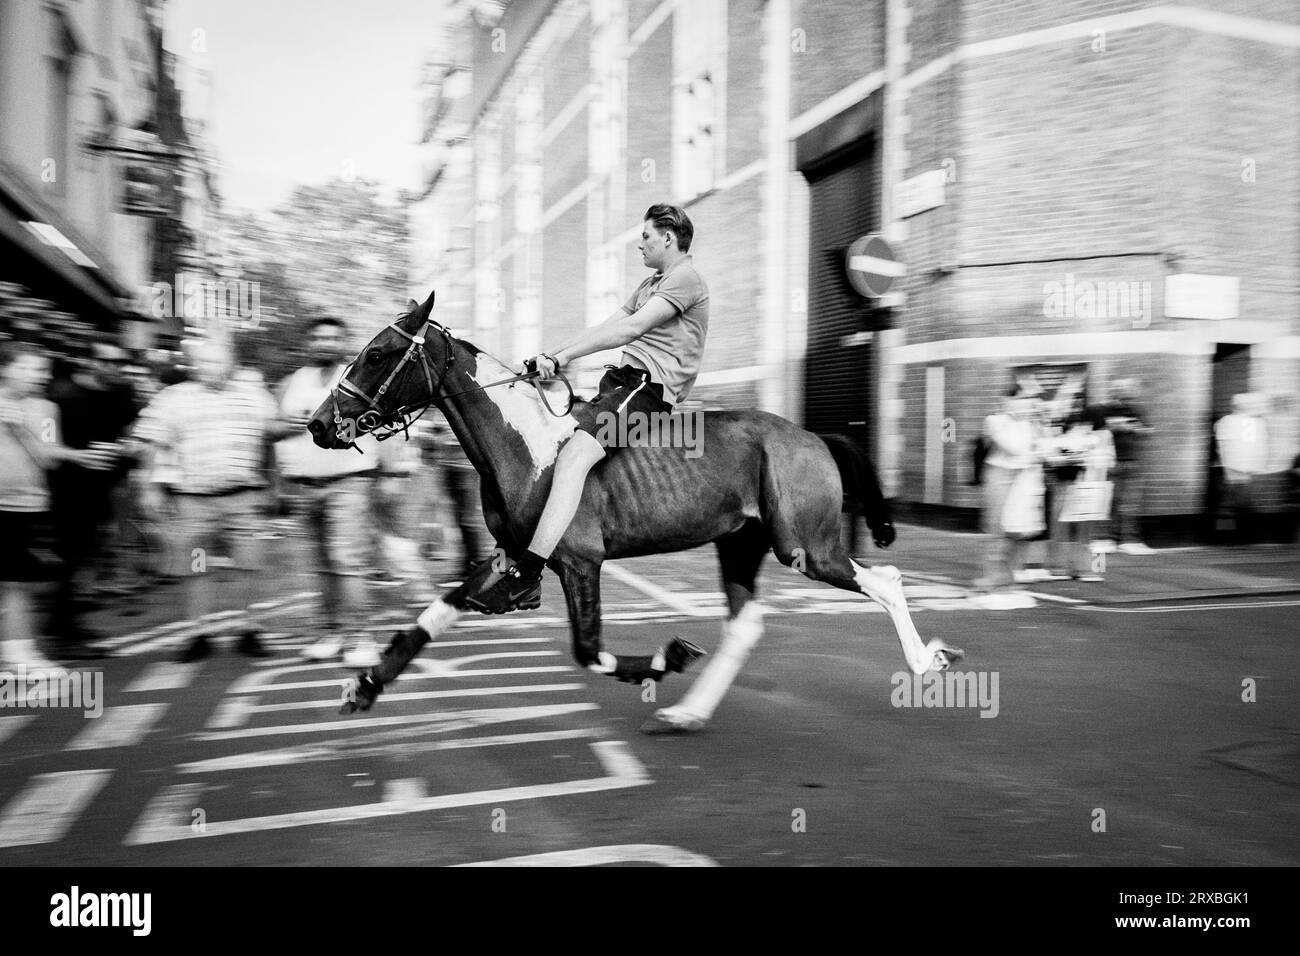 Fotografia di strada in bianco e nero a Londra: Un giovane cavalca un cavallo lungo la strada greca a Soho, Londra, Regno Unito. Foto Stock